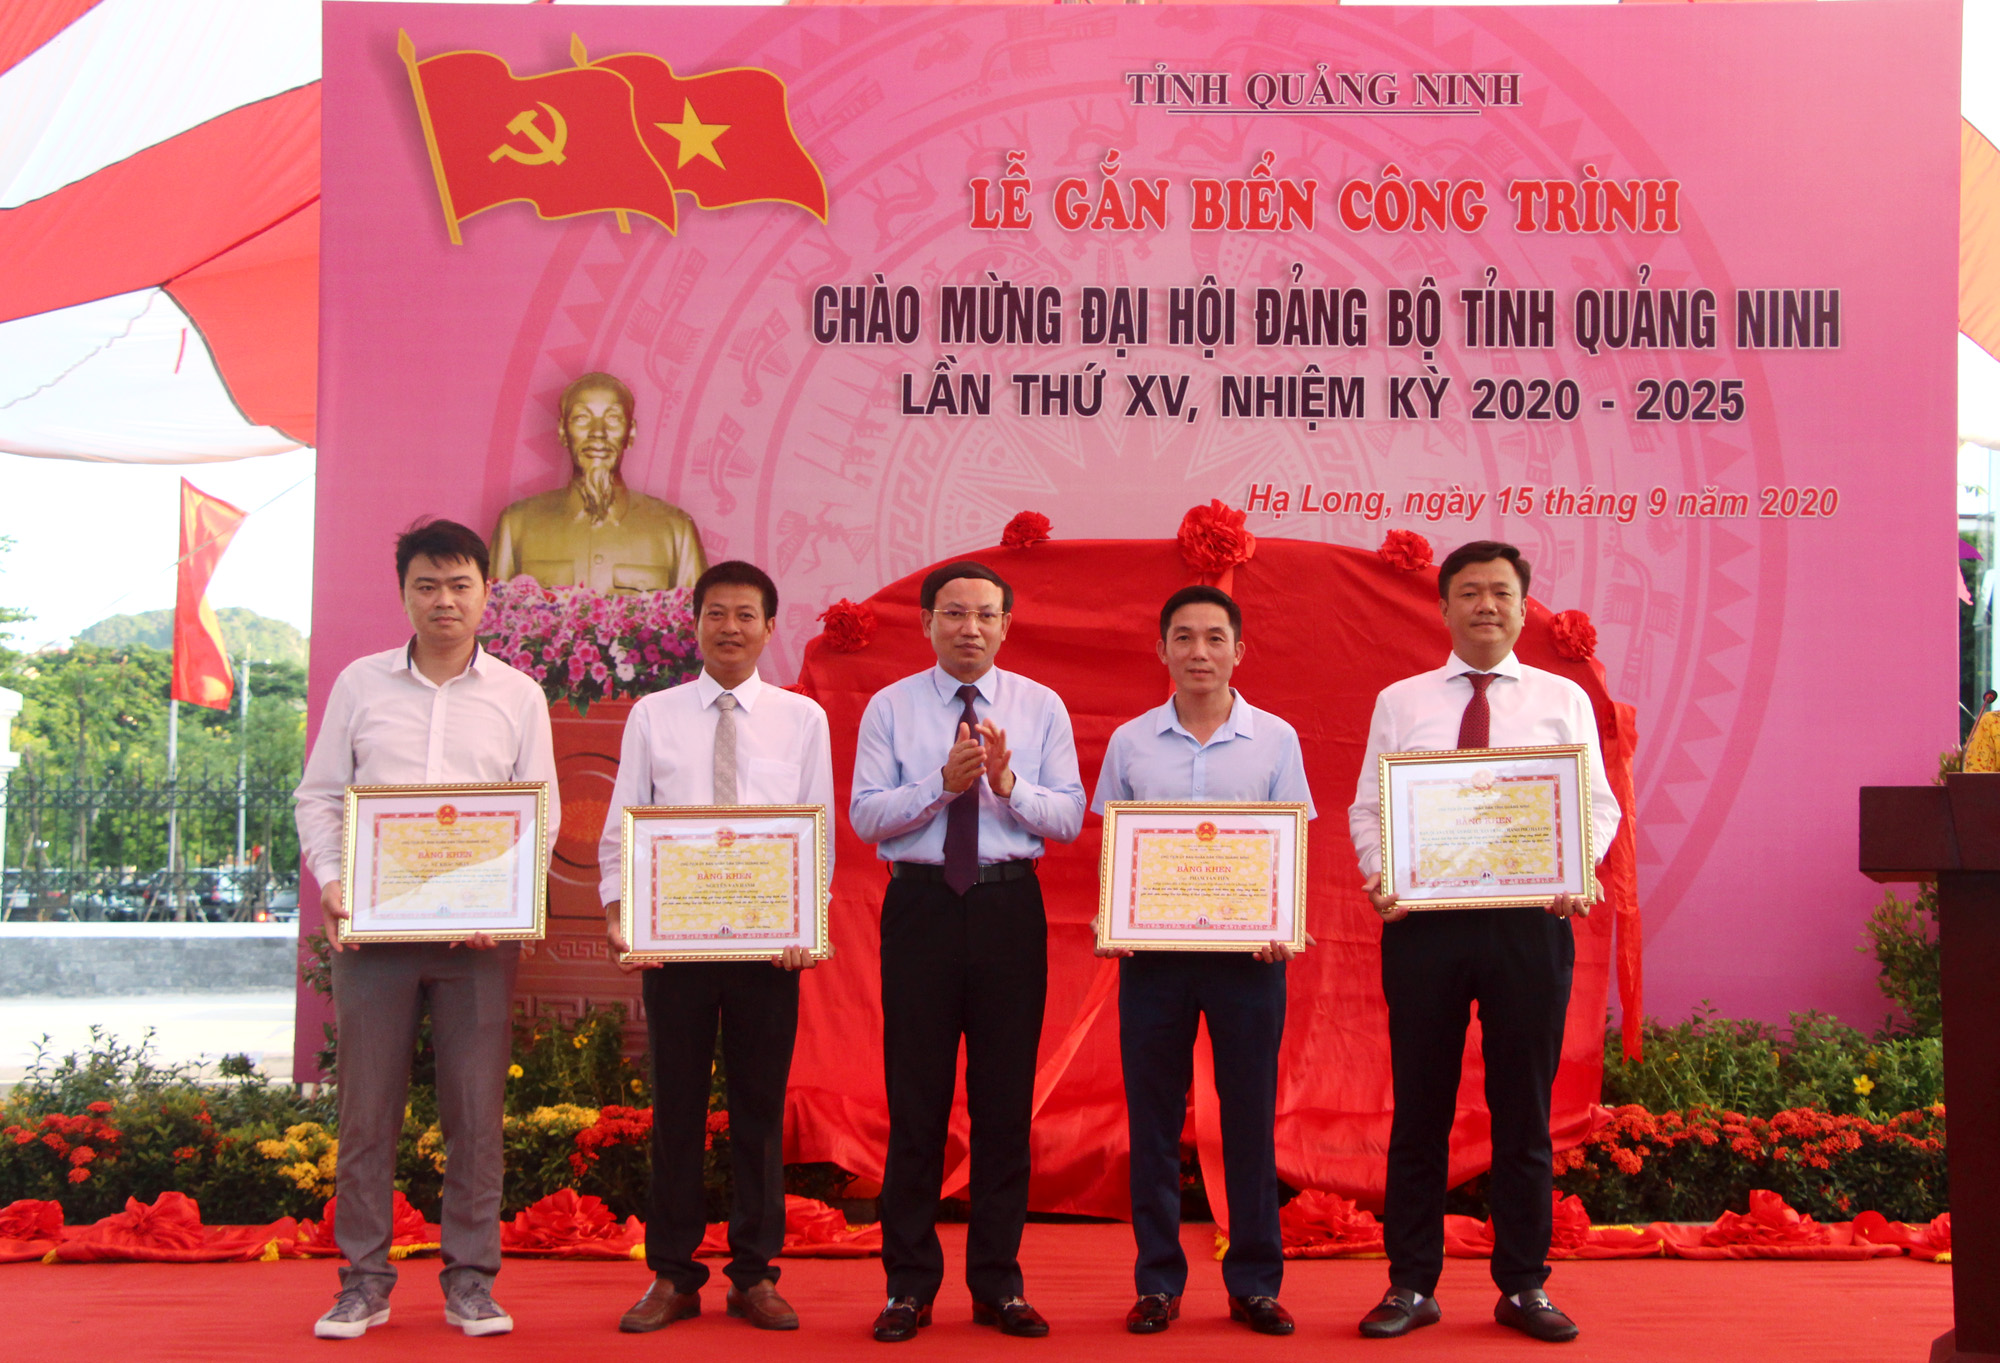 Đồng chí Nguyễn Xuân Ký, Bí thư Tỉnh ủy, Chủ tịch HĐND tỉnh, trao Bằng khen của UBND tỉnh cho các tập thể, cá nhân có thành tích xuất sắc trong thực hiện công trình.